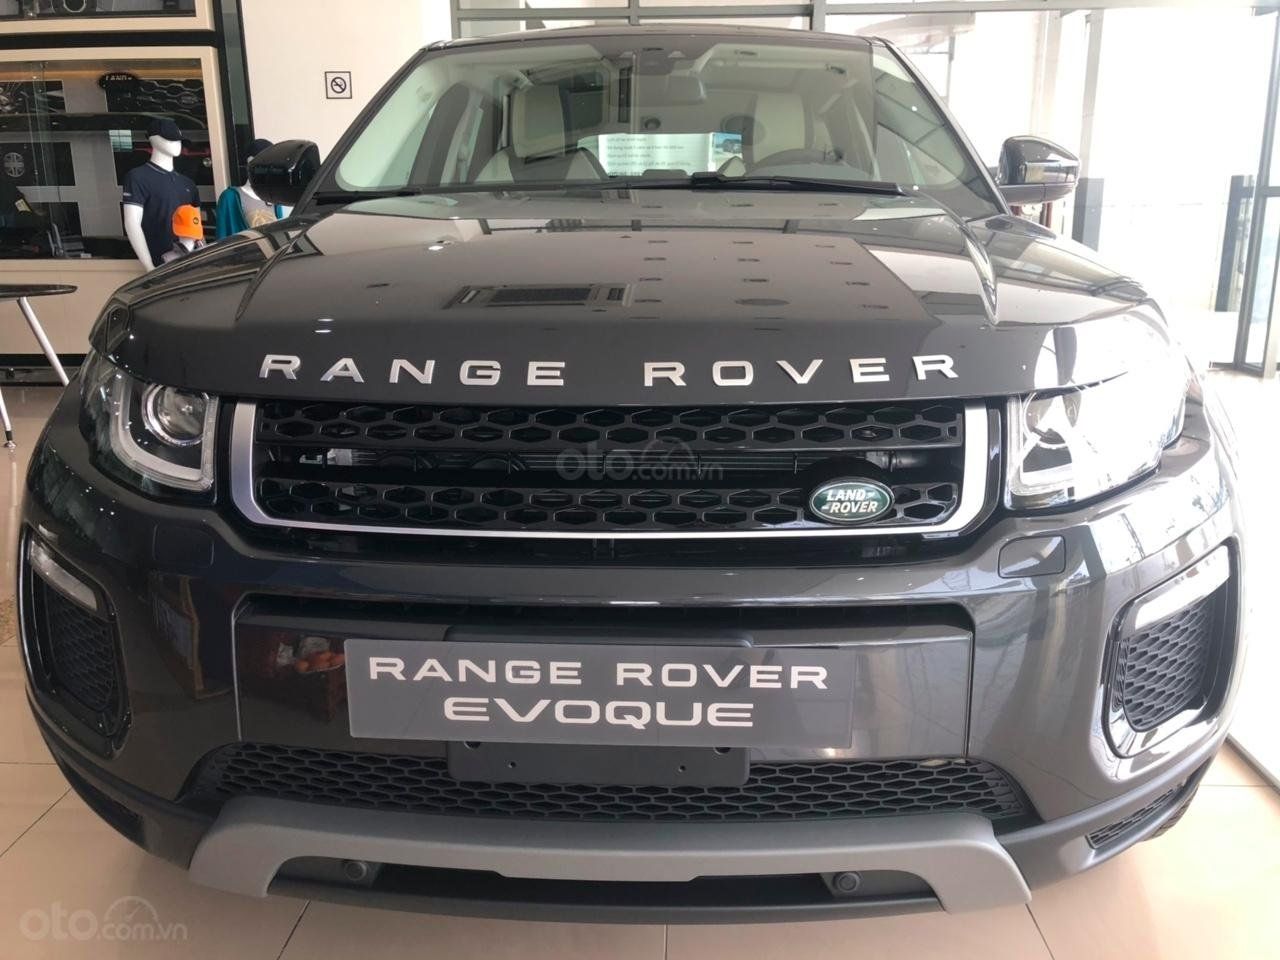 LandRover 2019 - 0918842662 bán xe LandRover Range Rover Evoque 2019, màu đỏ, màu trắng, đen, xanh tại Bình Dương, Đồng Nai